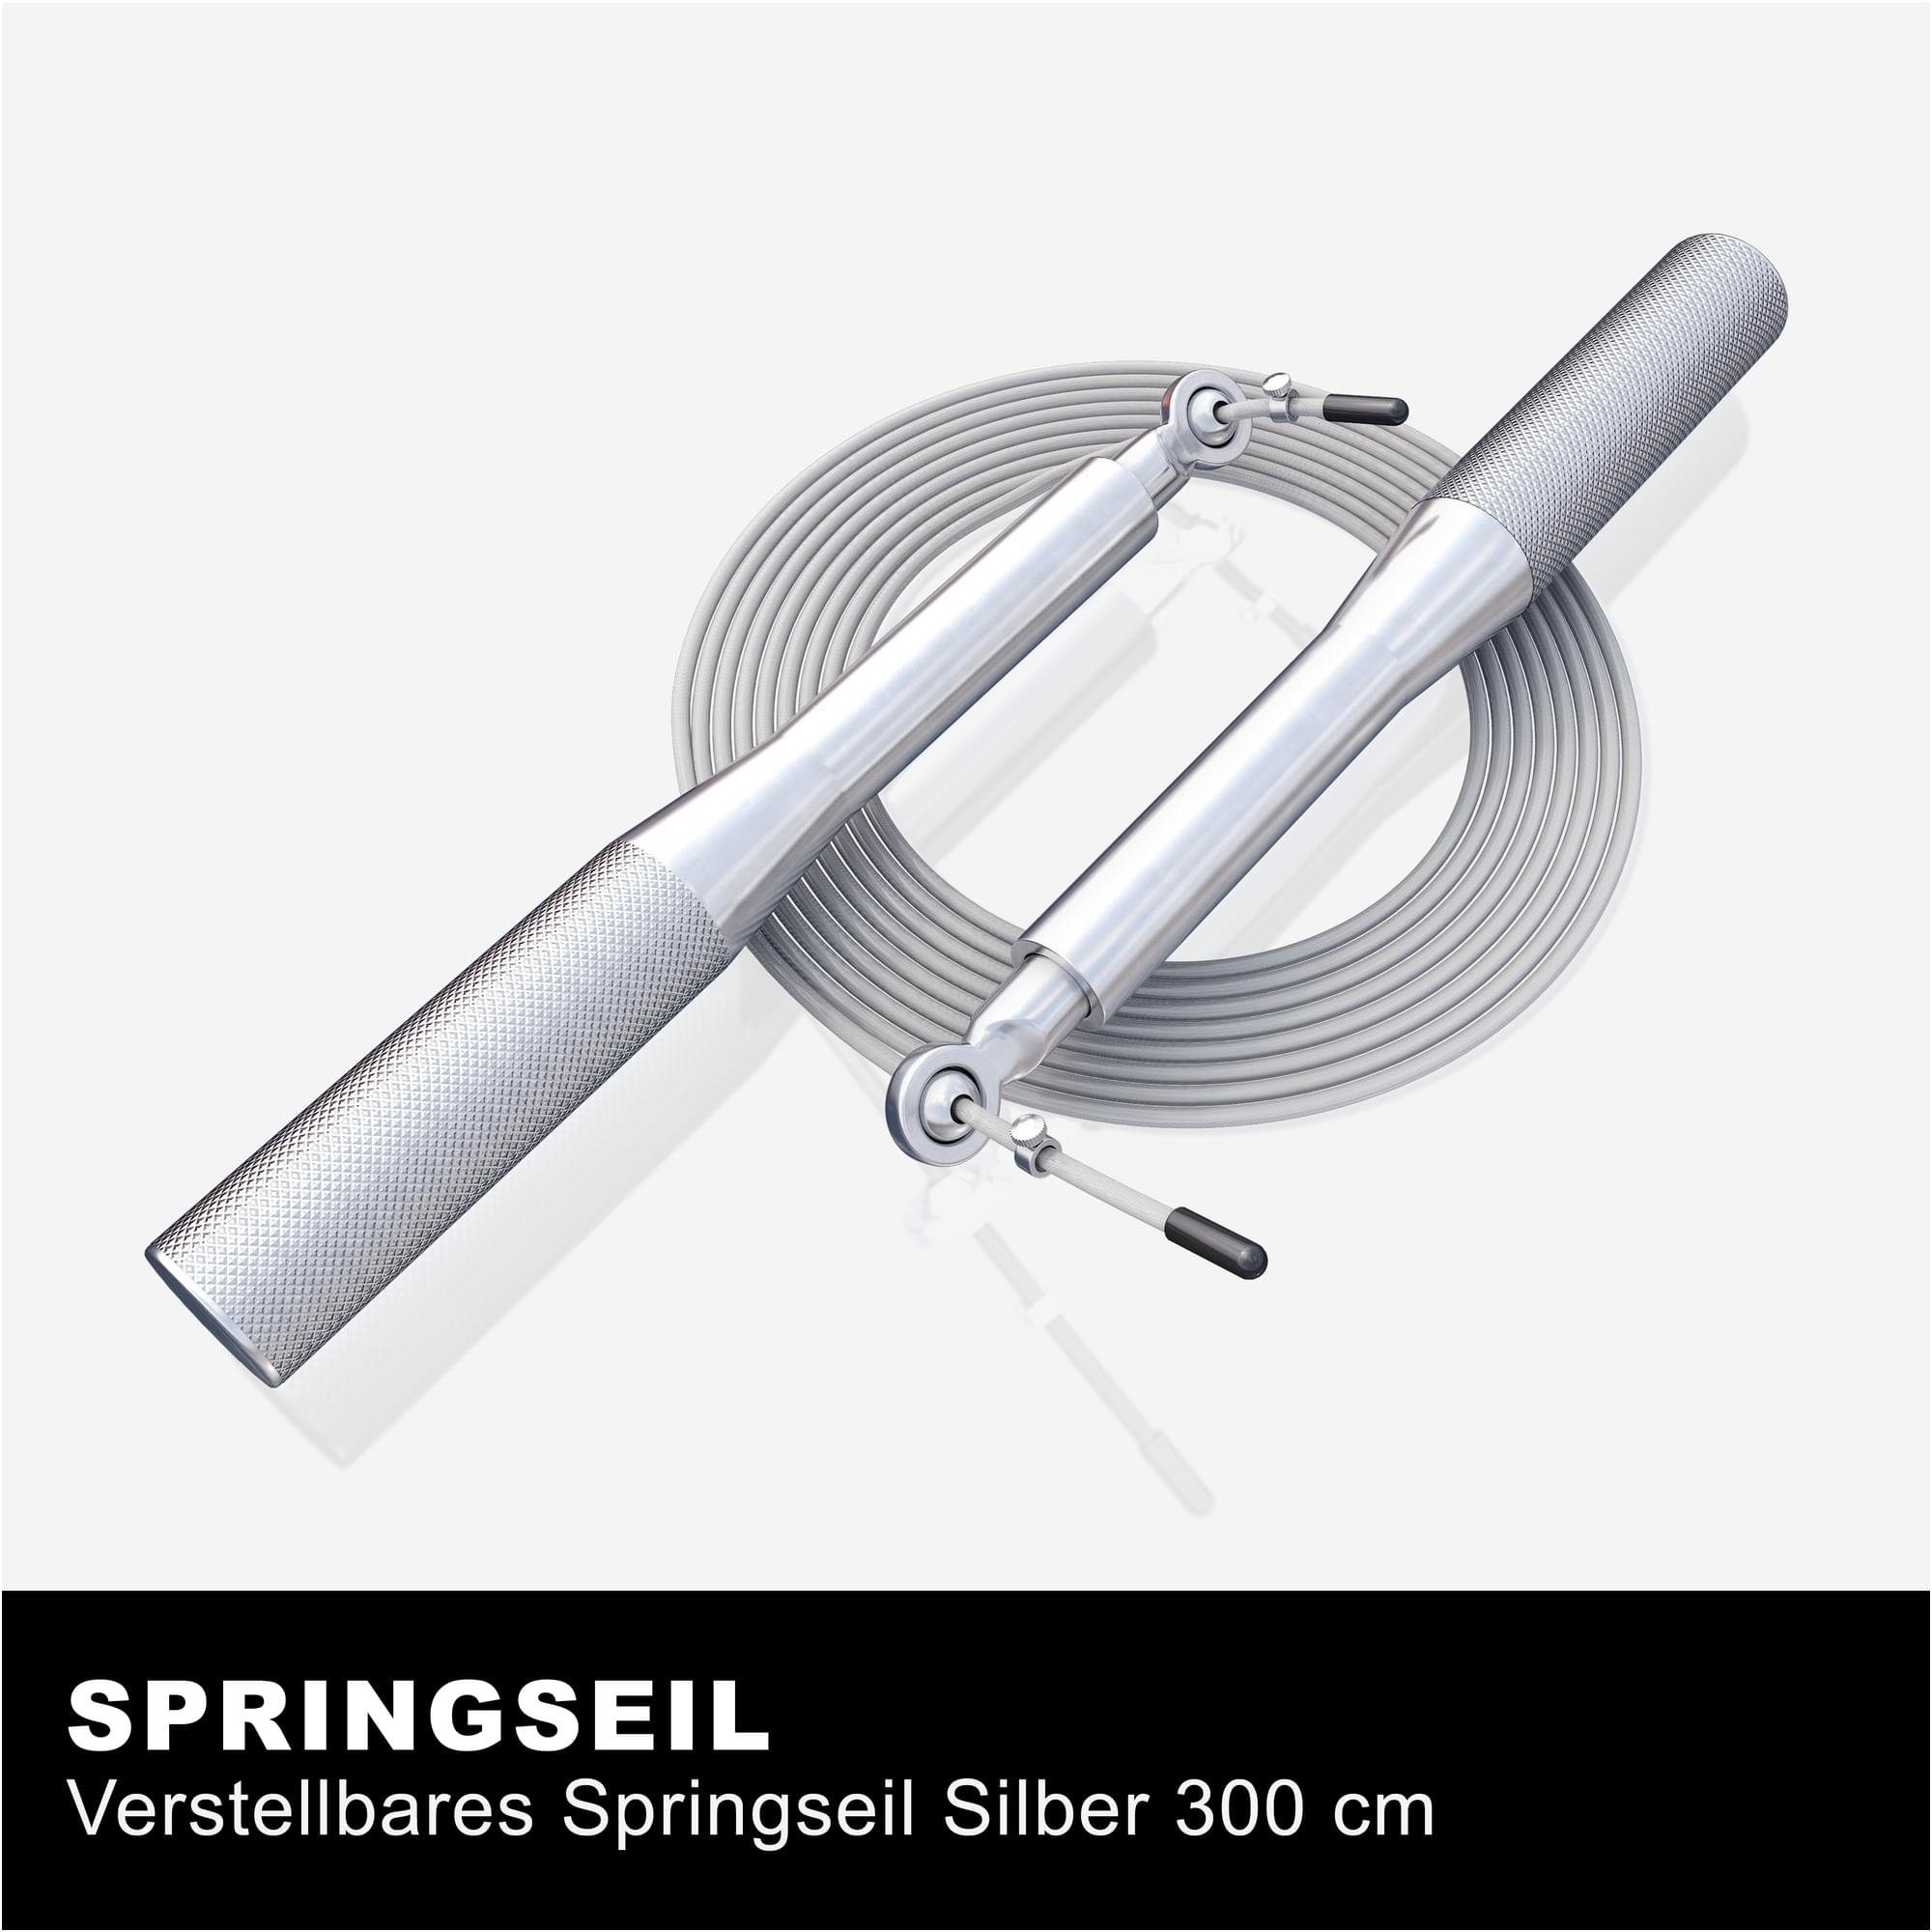 3m, Silber Verstellbar, - - Sprungseil GORILLA Speed Skipping, Jump, Springseil Rutschfeste Rope SPORTS